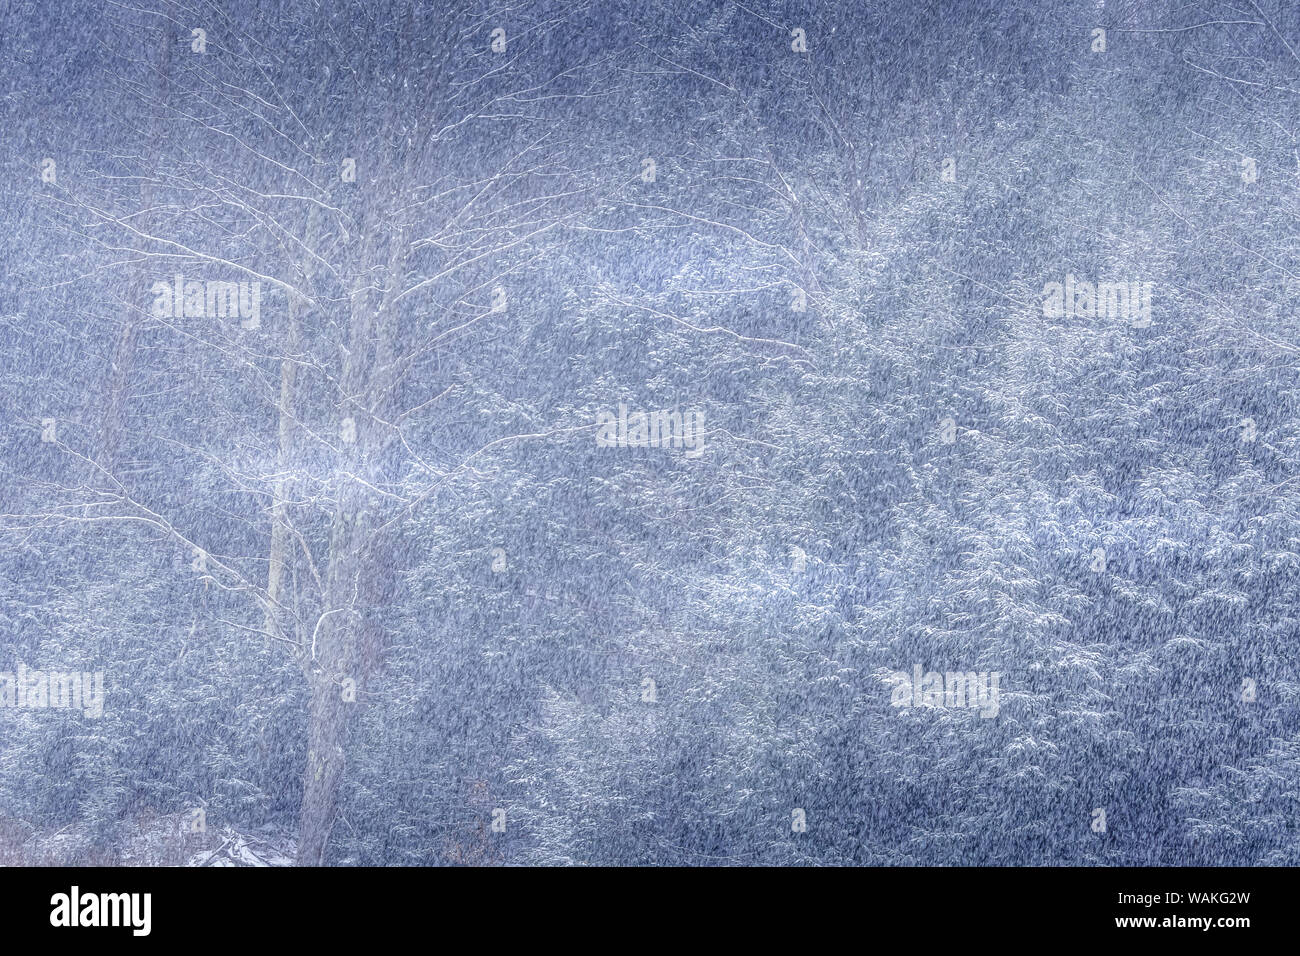 Stati Uniti d'America, Pennsylvania, Shunk. Abstract di foresta in inverno. Credito come: Jay O'Brien Jaynes / Galleria / DanitaDelimont.com Foto Stock